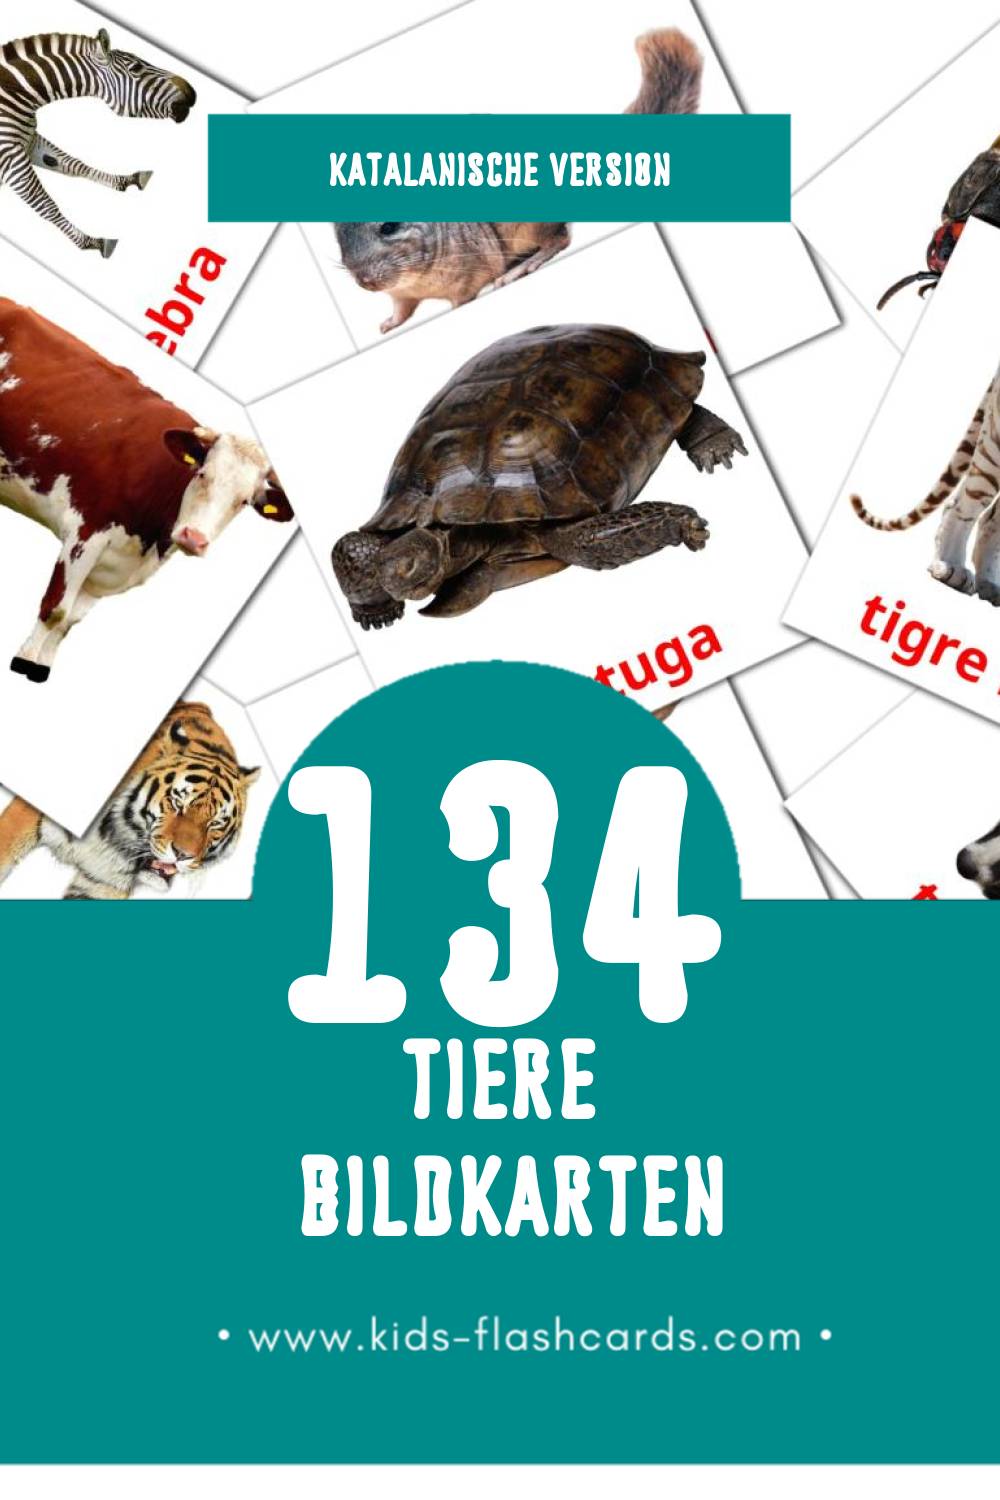 Visual Animals Flashcards für Kleinkinder (134 Karten in Katalanisch)